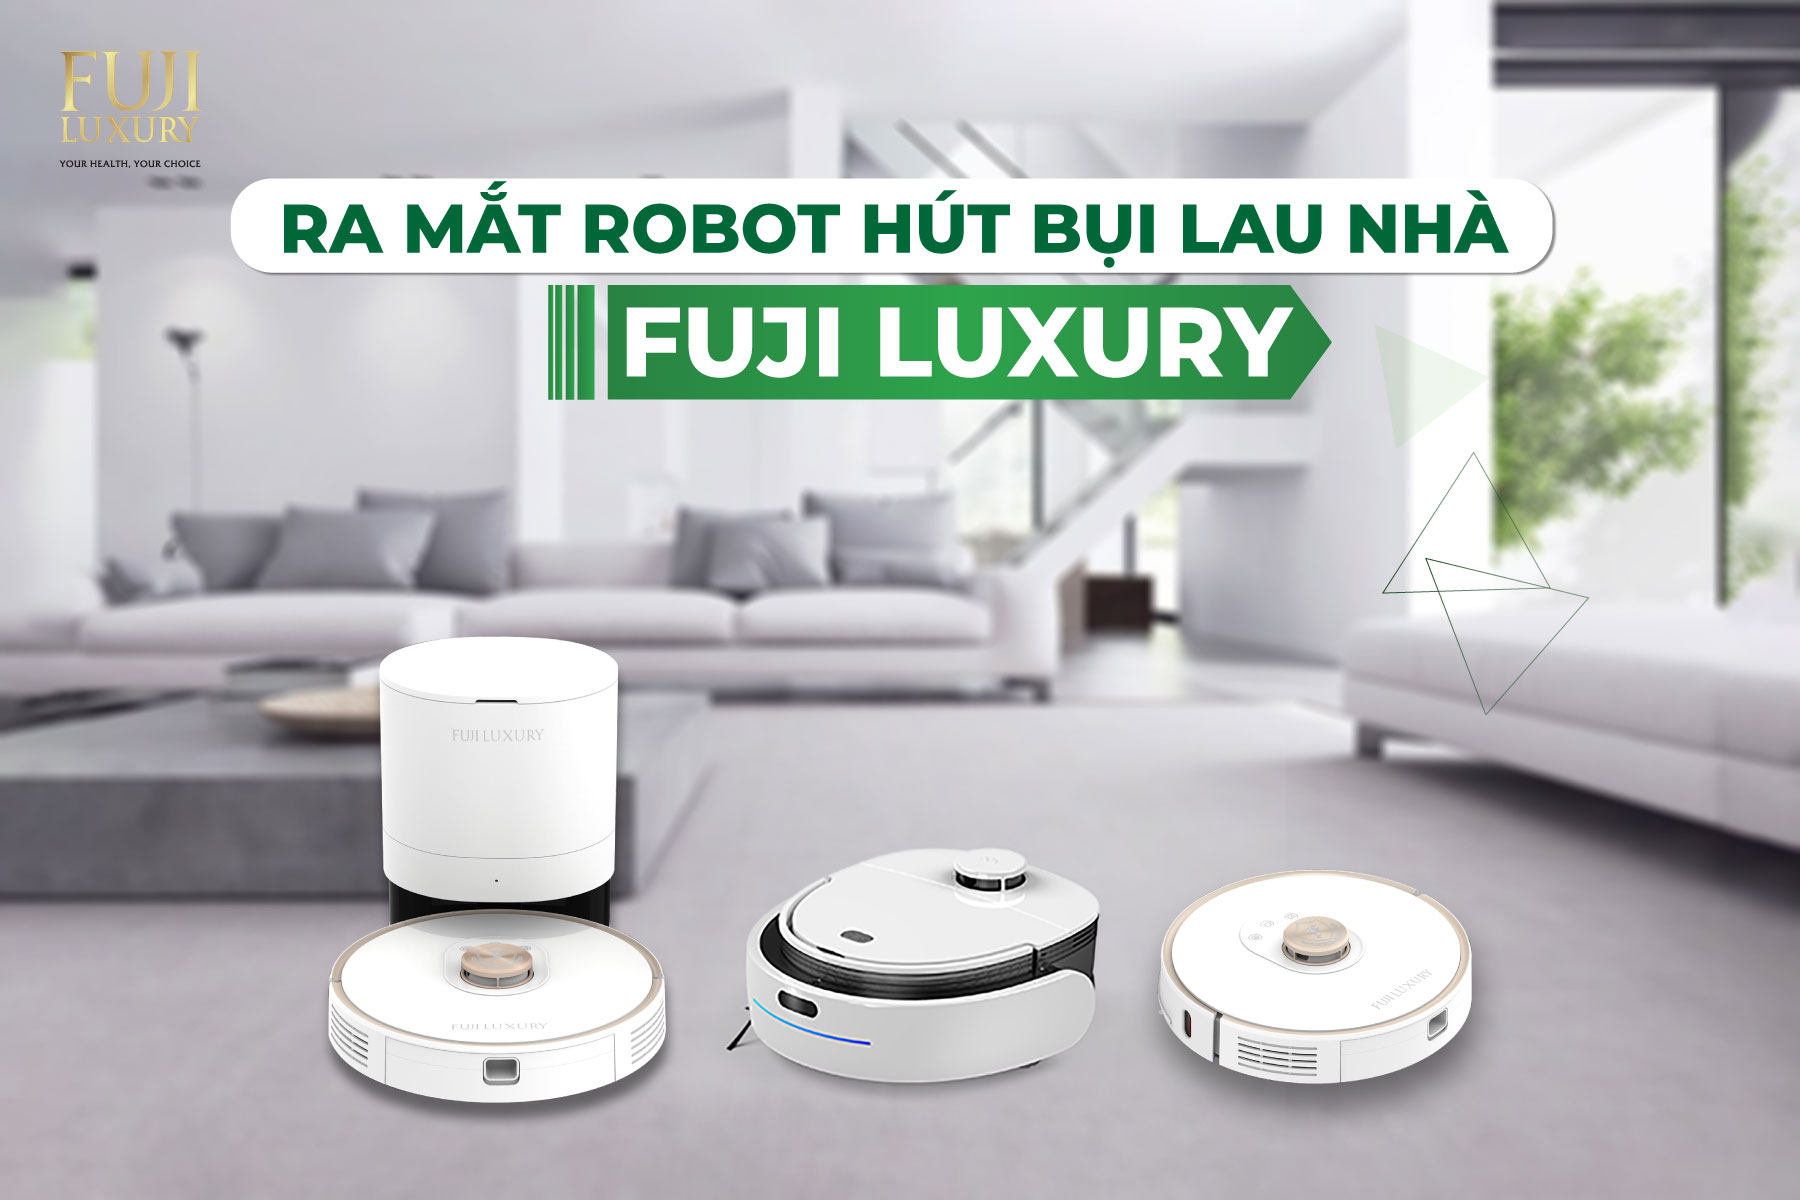 Fuji Luxury ra mắt 3 dòng sản phẩm Robot hút bụi thông minh